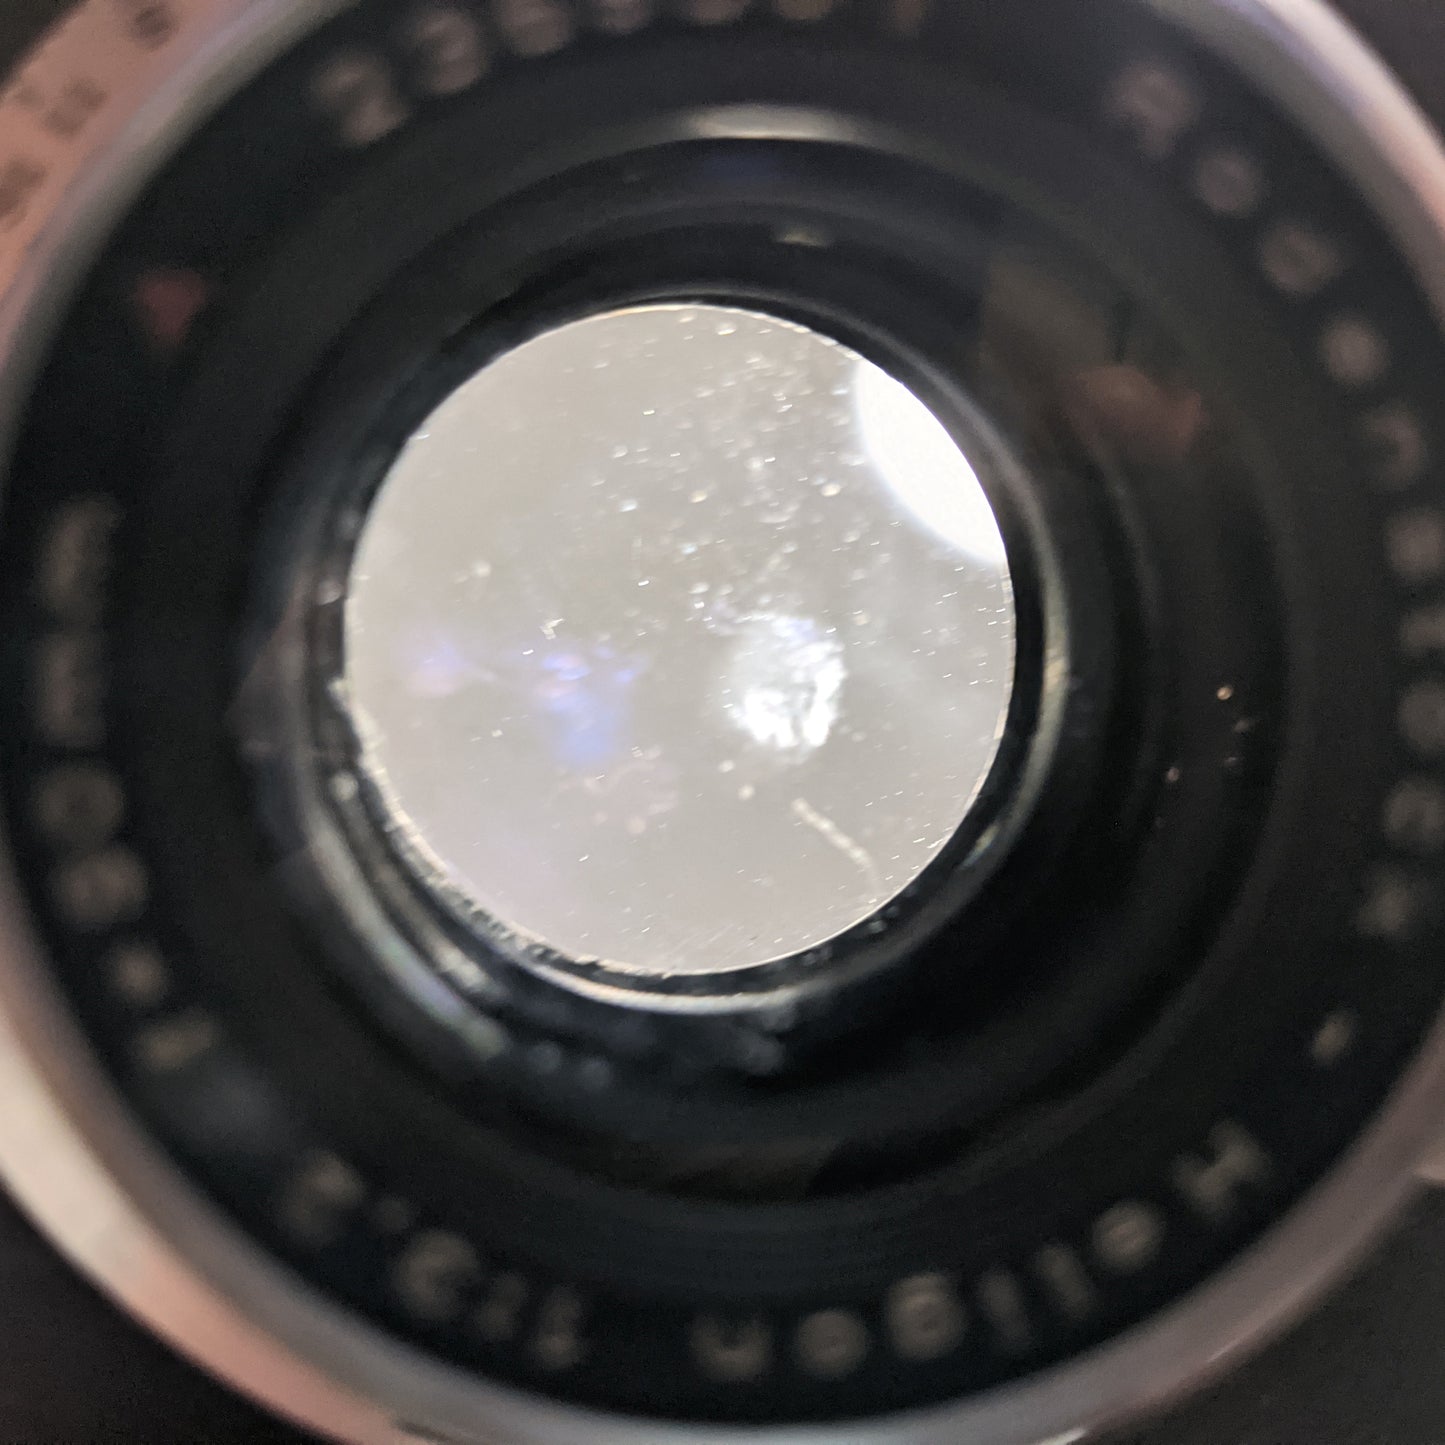 Rodenstock-Heligon 90mm 3.2 Large Format Lens on Synchro-Compur Shutter